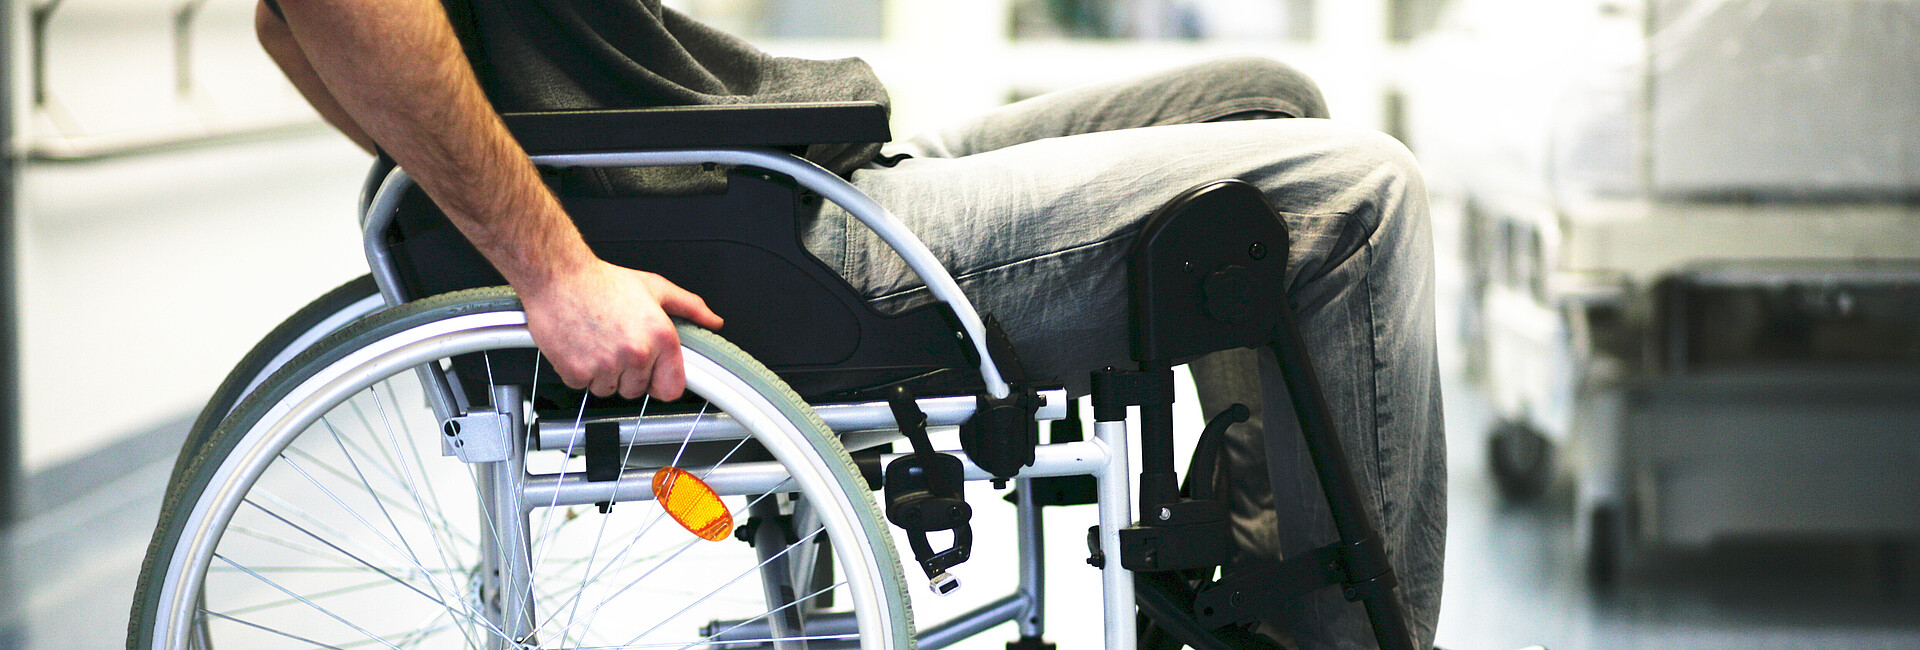 Bild zeigt einen Rollstuhlfahrer